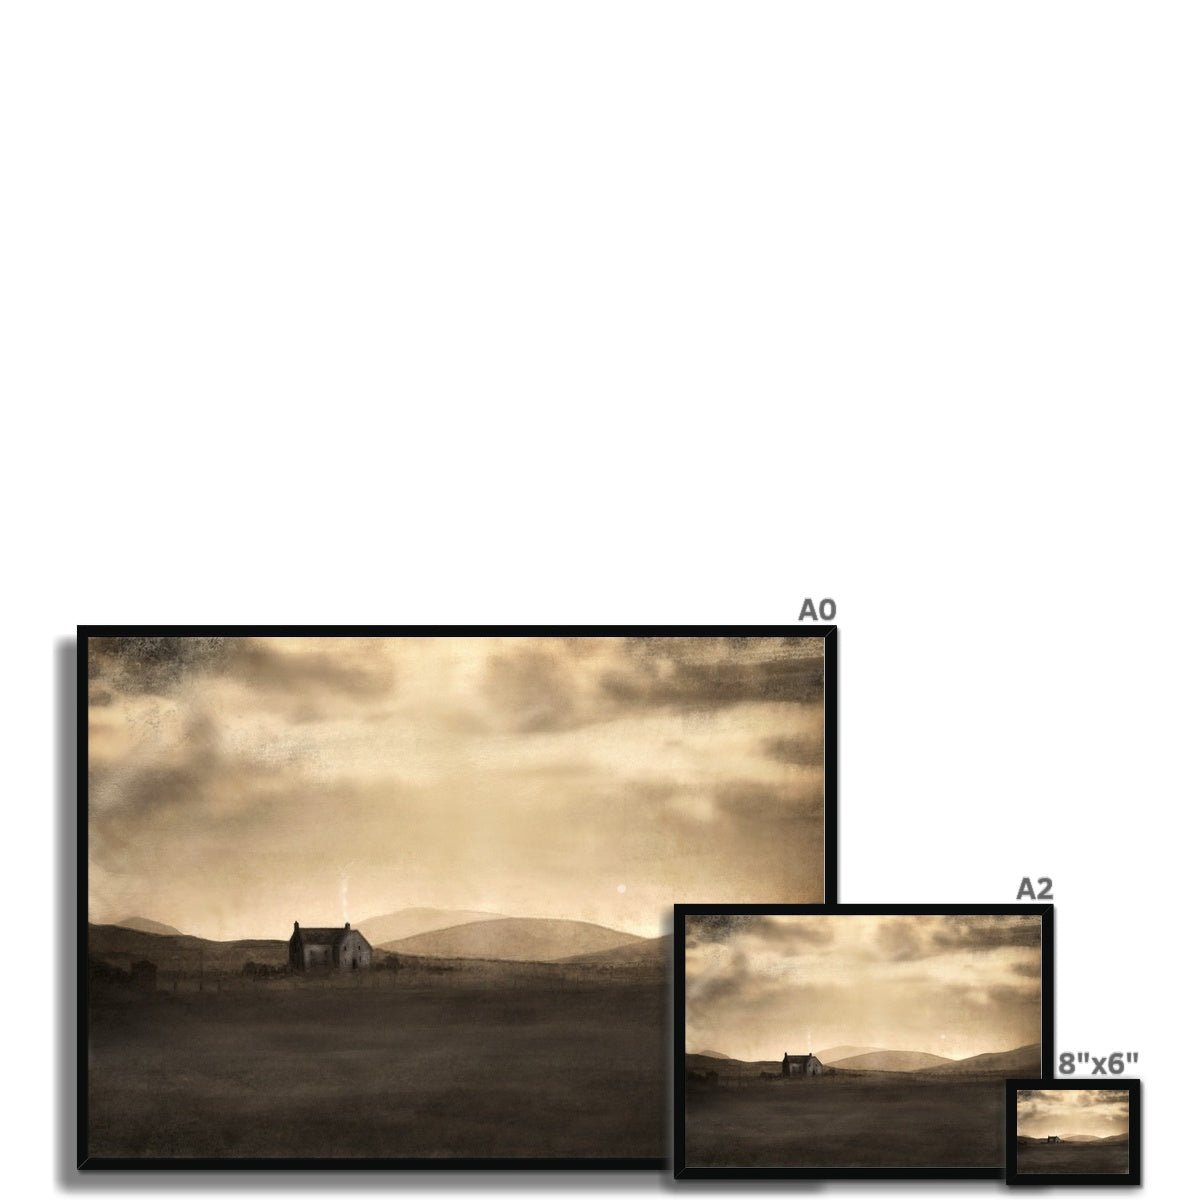 A Moonlit Croft Painting | Framed Prints From Scotland-Framed Prints-Hebridean Islands Art Gallery-Paintings, Prints, Homeware, Art Gifts From Scotland By Scottish Artist Kevin Hunter